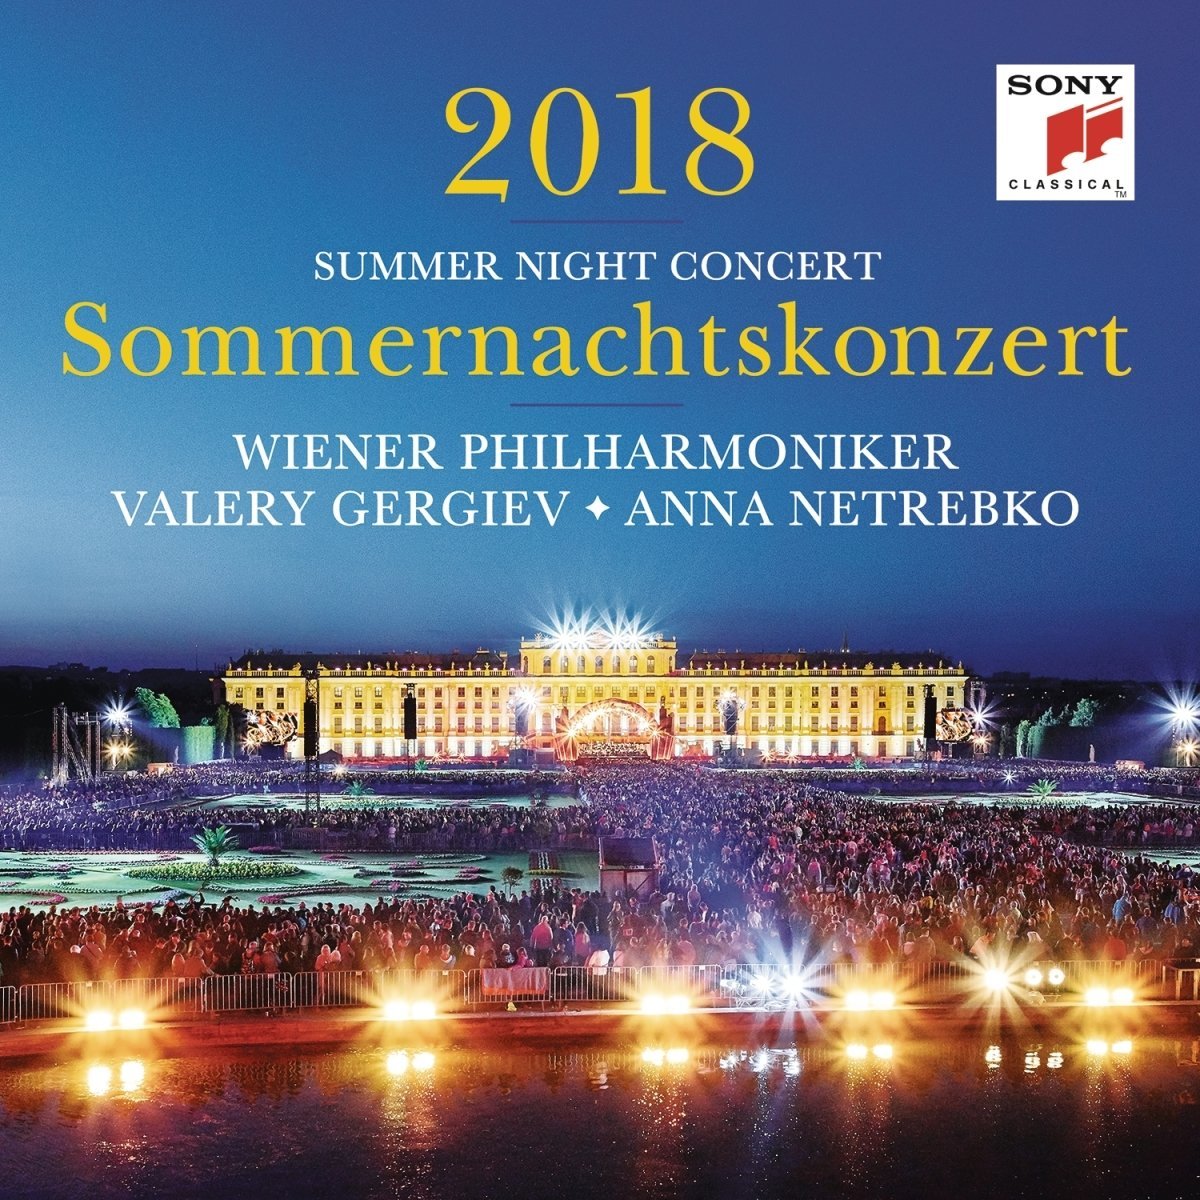 Wiener Philharmoniker Summer Night Concert Schönbrunn 2018